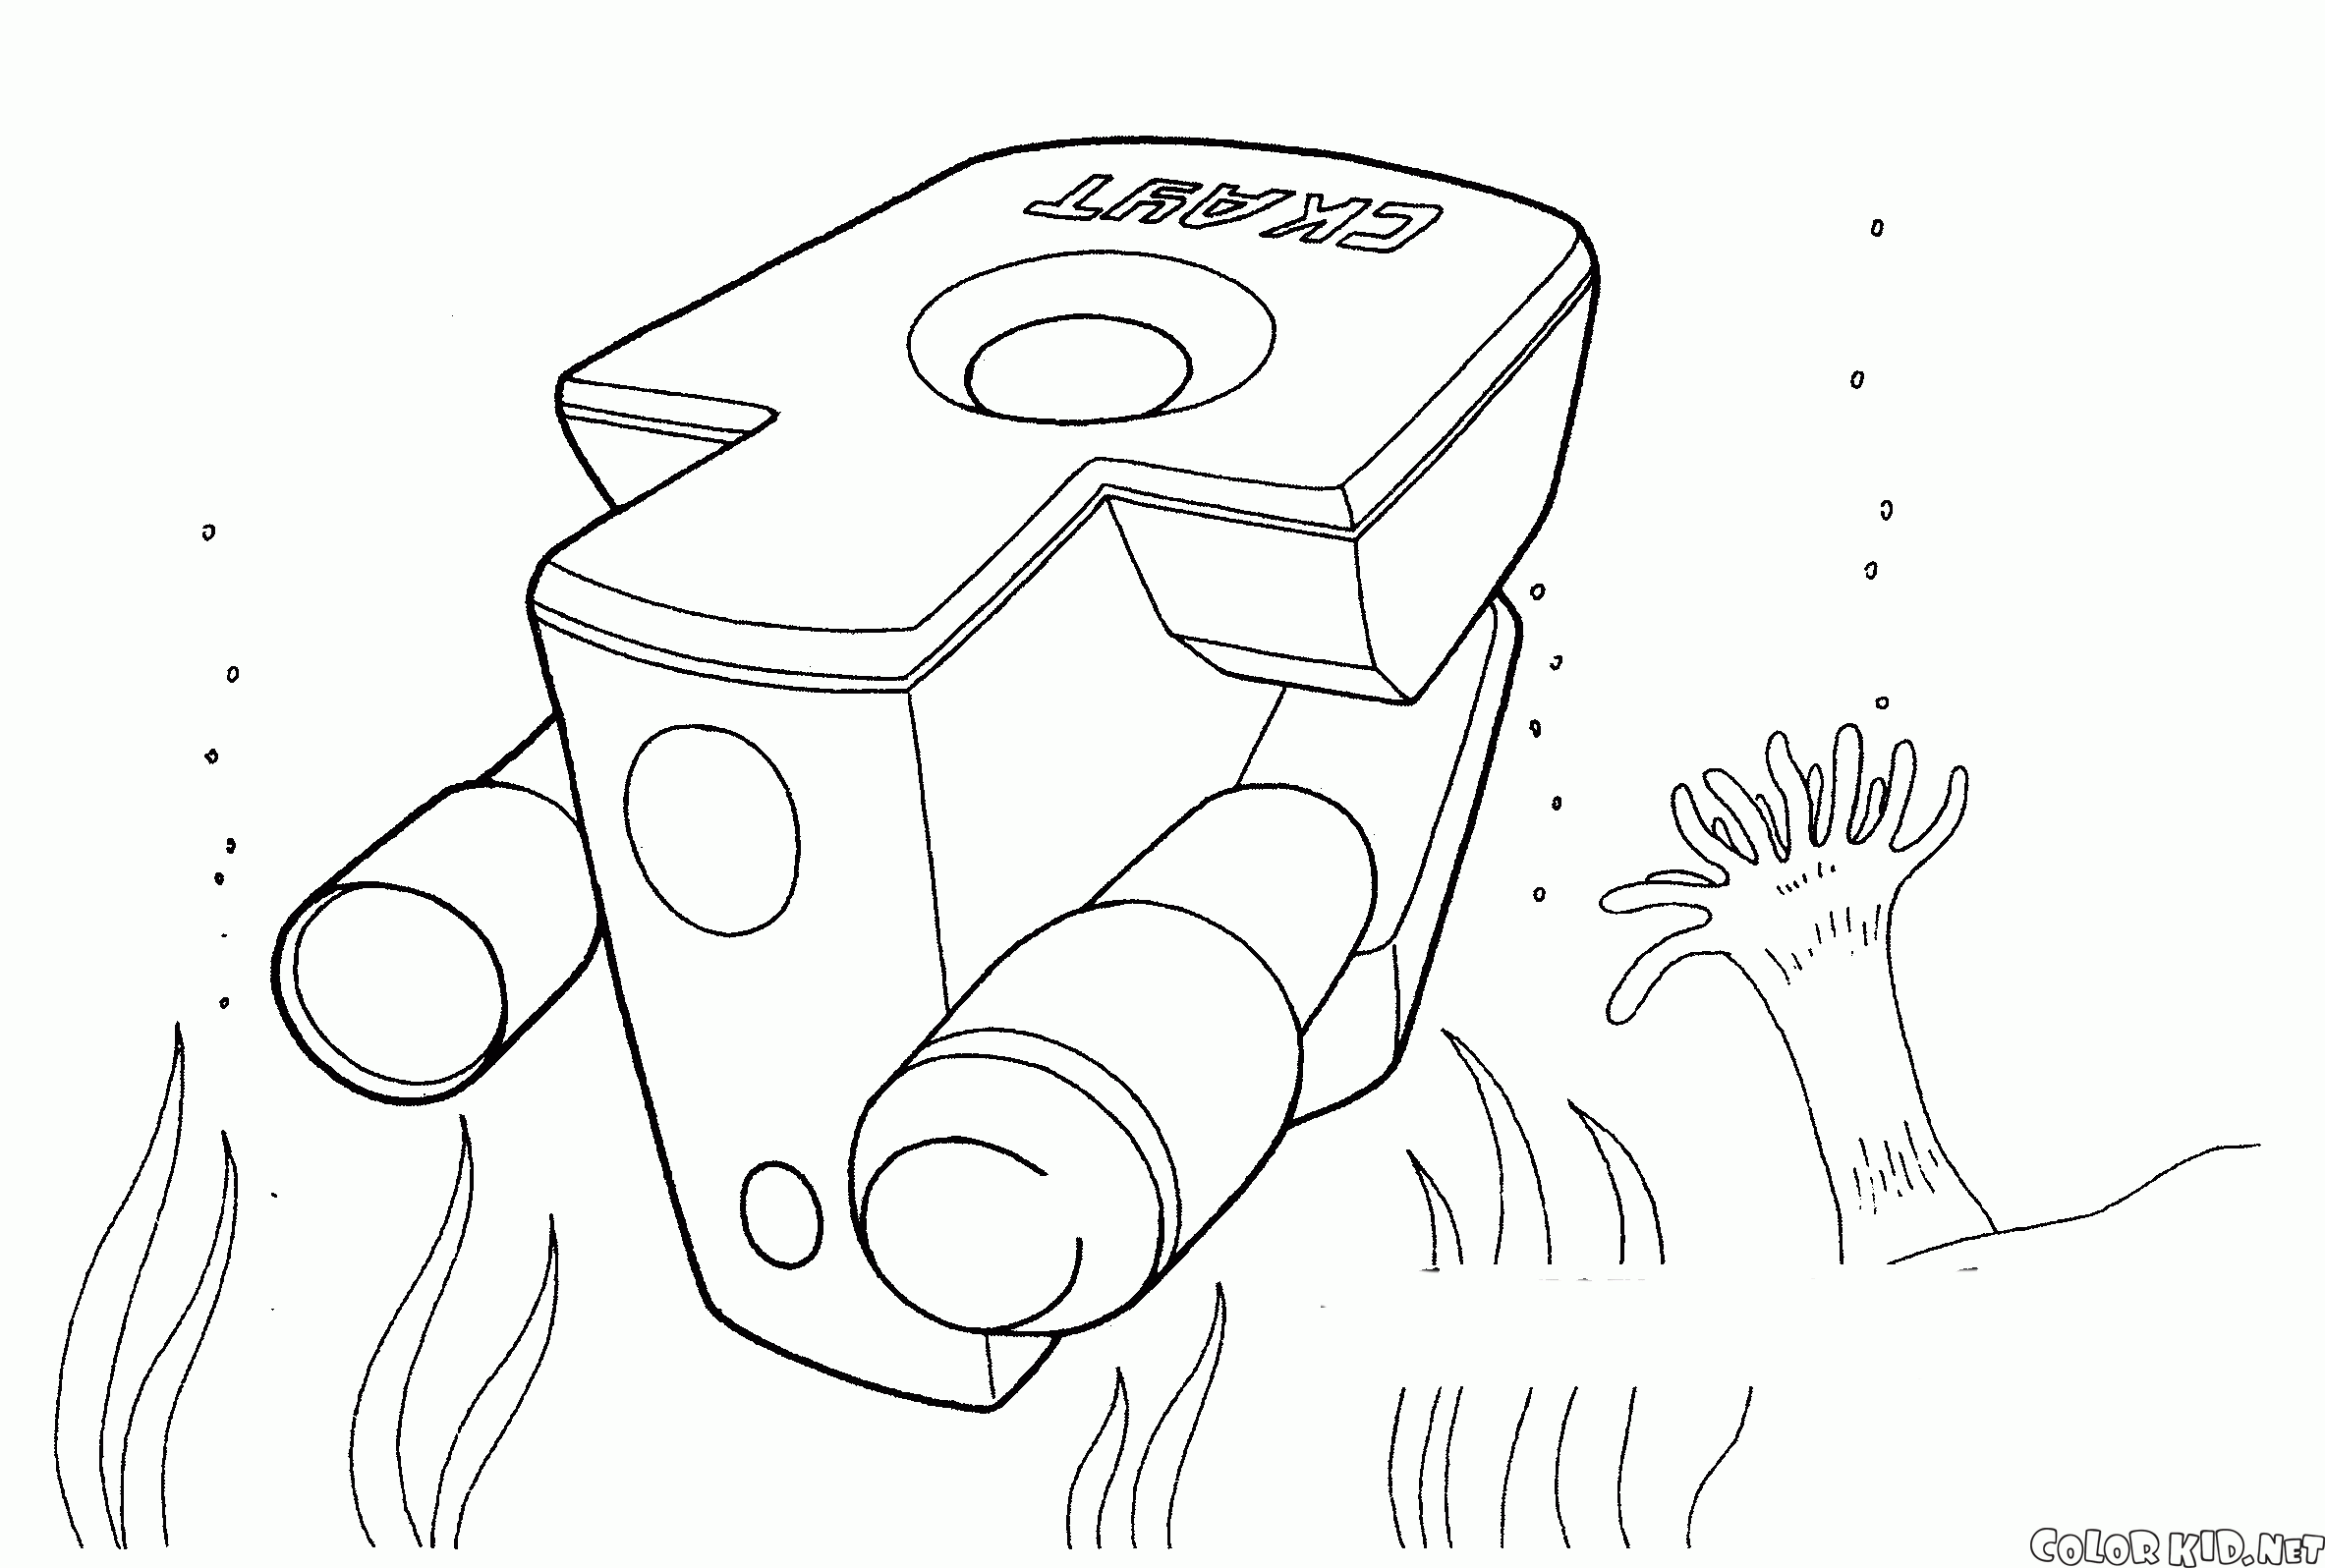 Deep-submergence vehicle